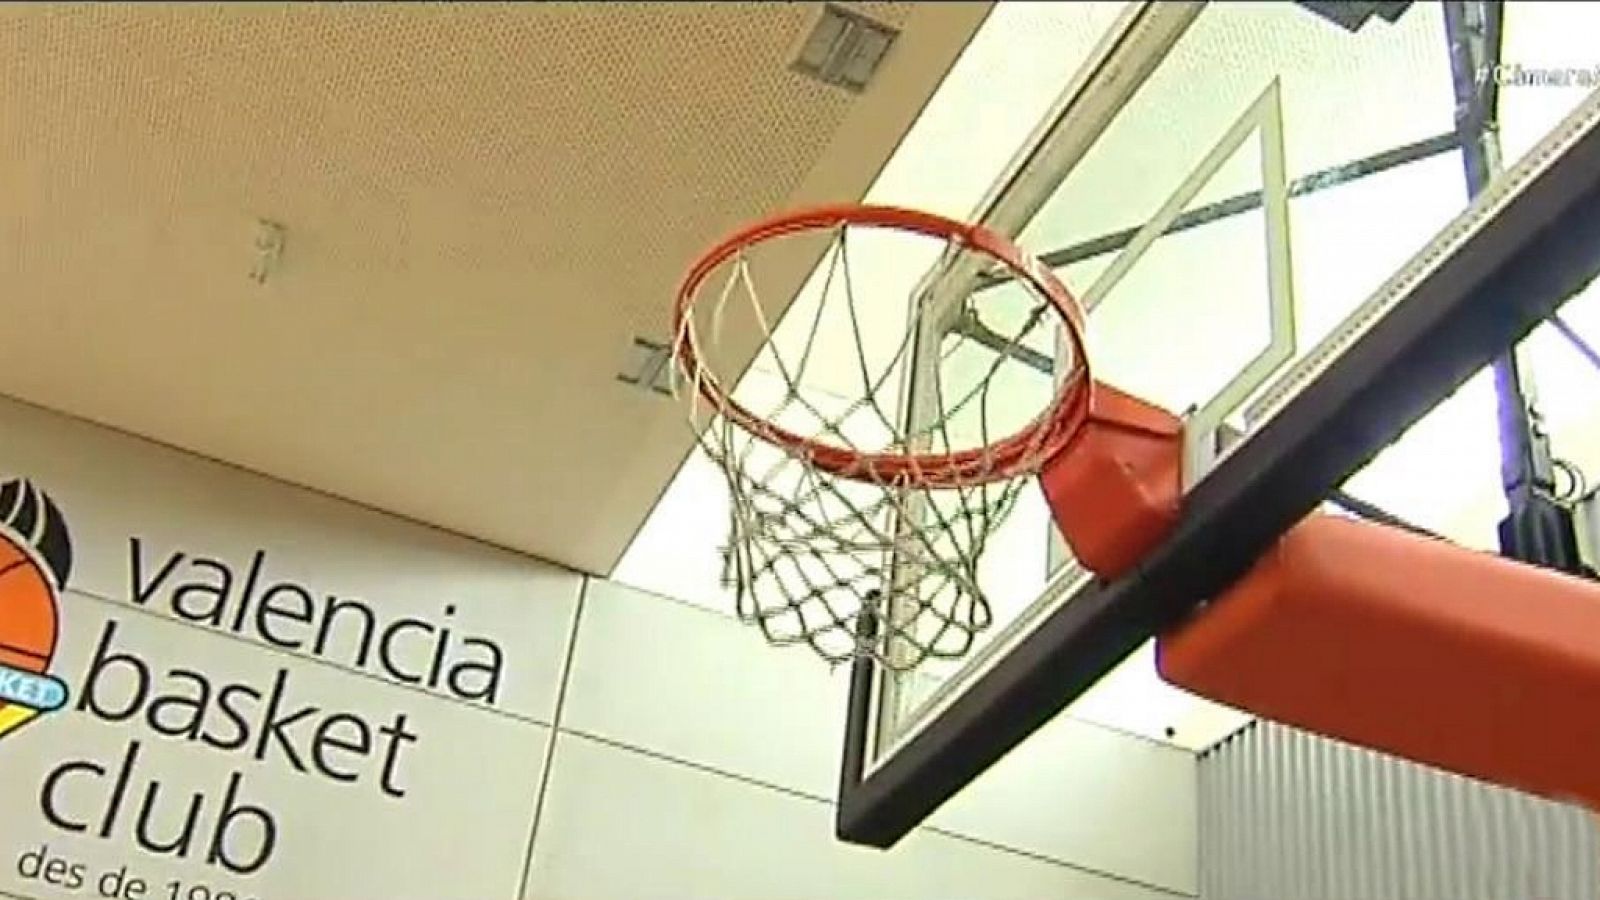 Cámara abierta - L'Alqueria del Basket de Valencia, el canal Unicoos, BrooklynFitBoxing.com y Juanjo Villalba (Vice TV) en 1minutoCOM - ver ahora